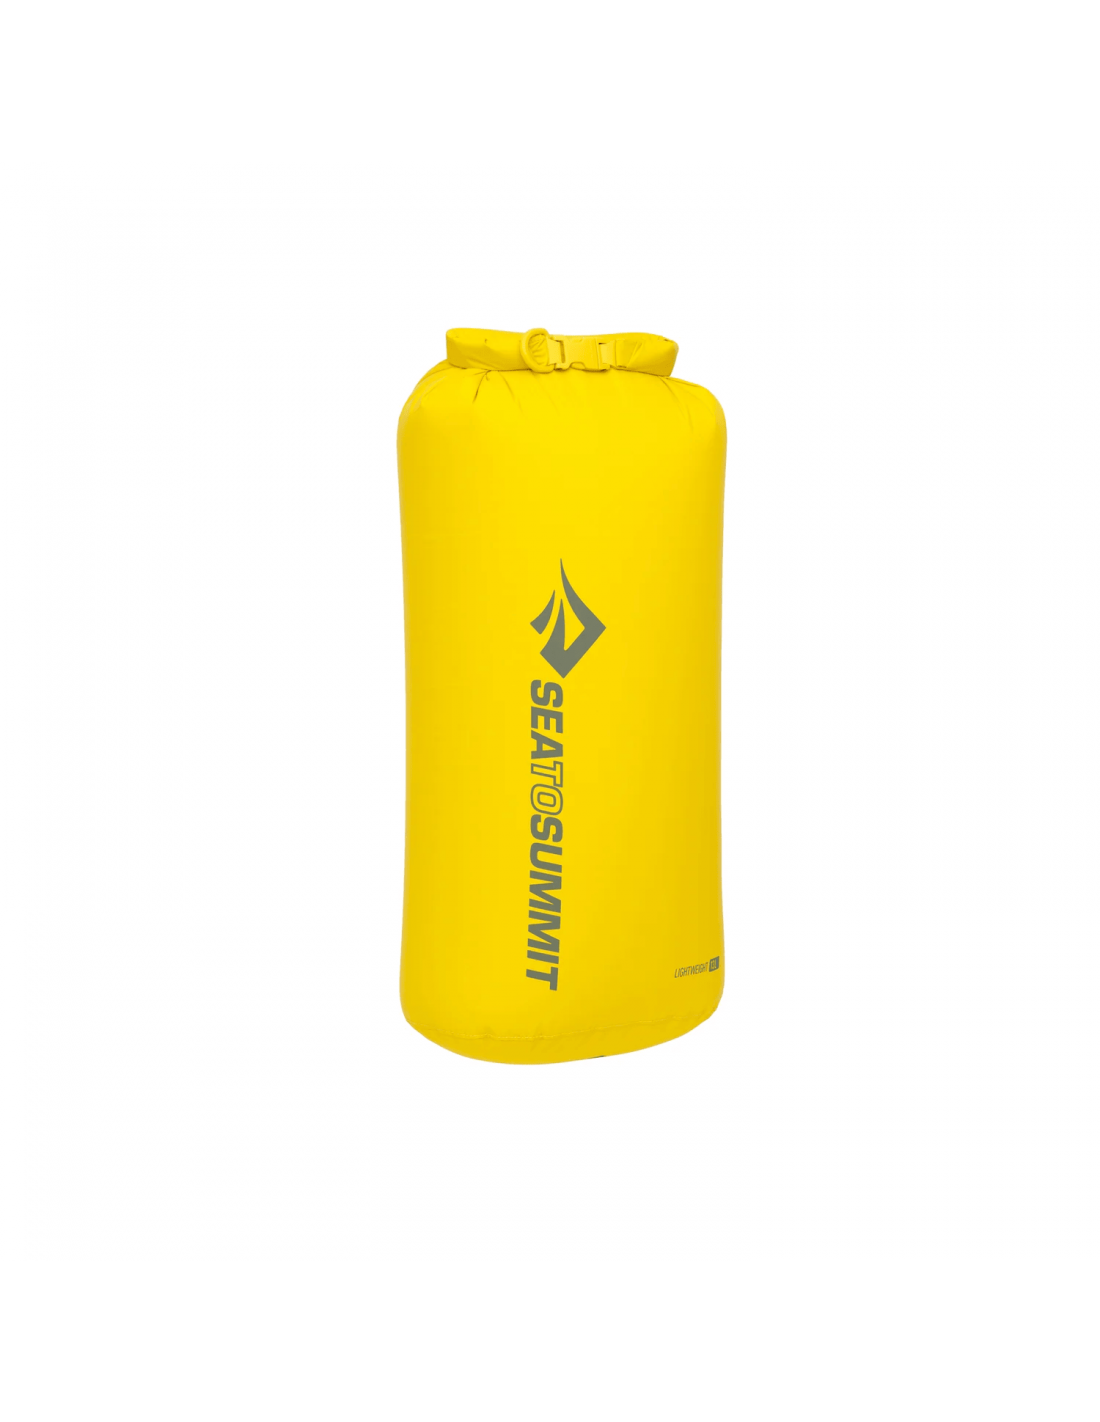 Sea To Summit Lightweight Dry Bag 13 Liter, sulphur yellow von Sea To Summit